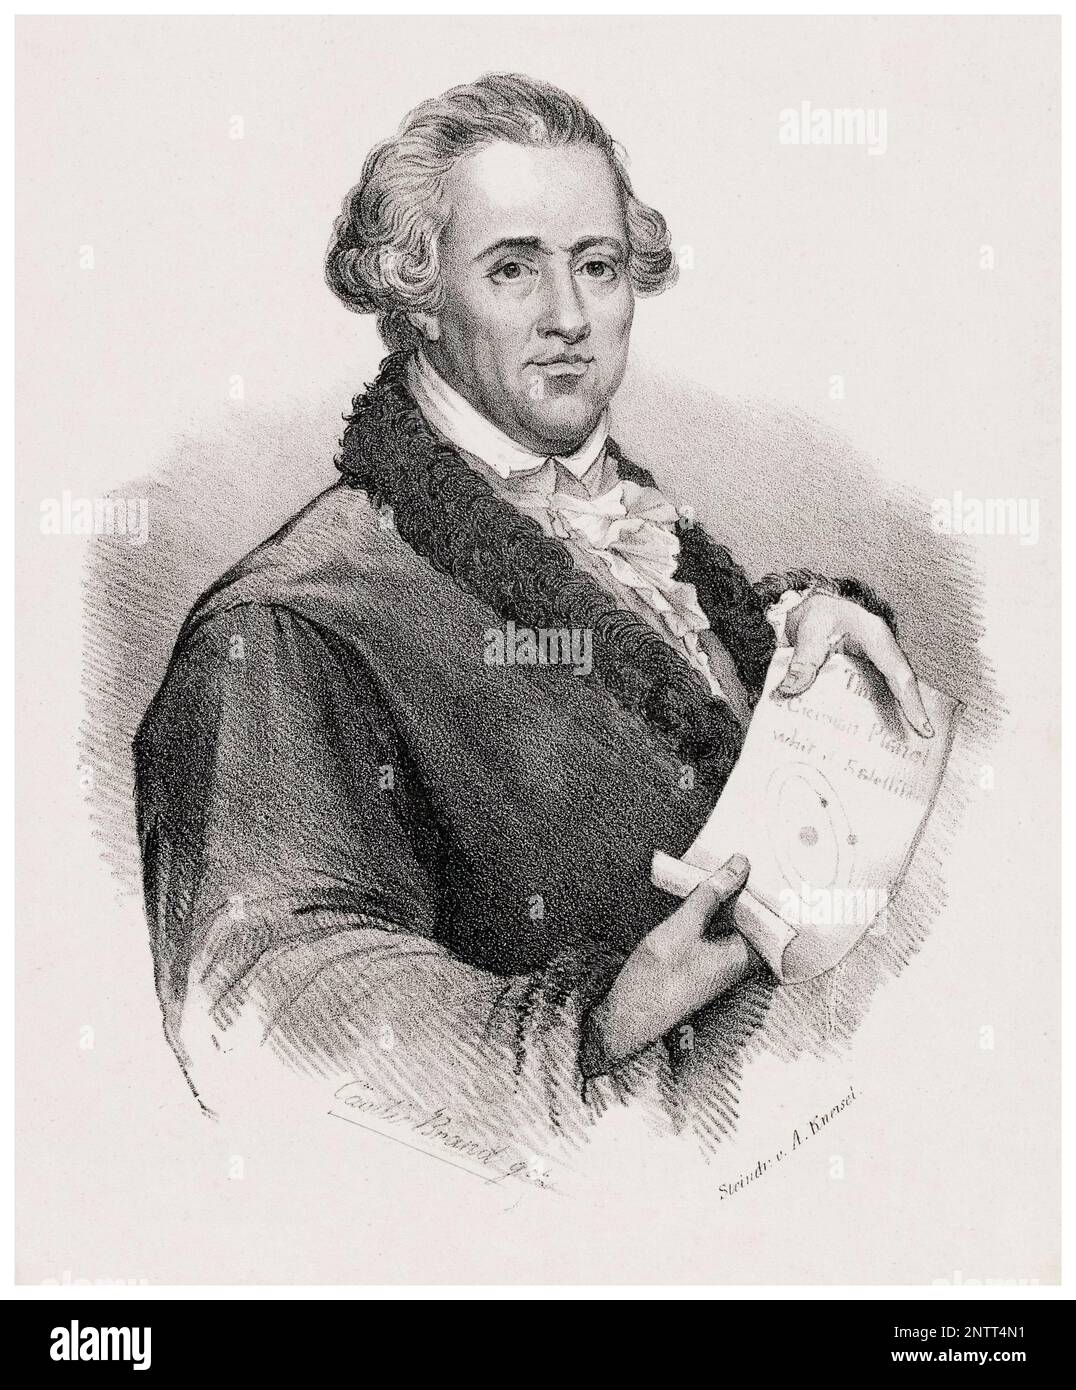 Sir William Herschel (1738-1822), né en Allemagne, astronome et compositeur britannique, gravure de portraits d'août Kneisel, 1830-1835 Banque D'Images